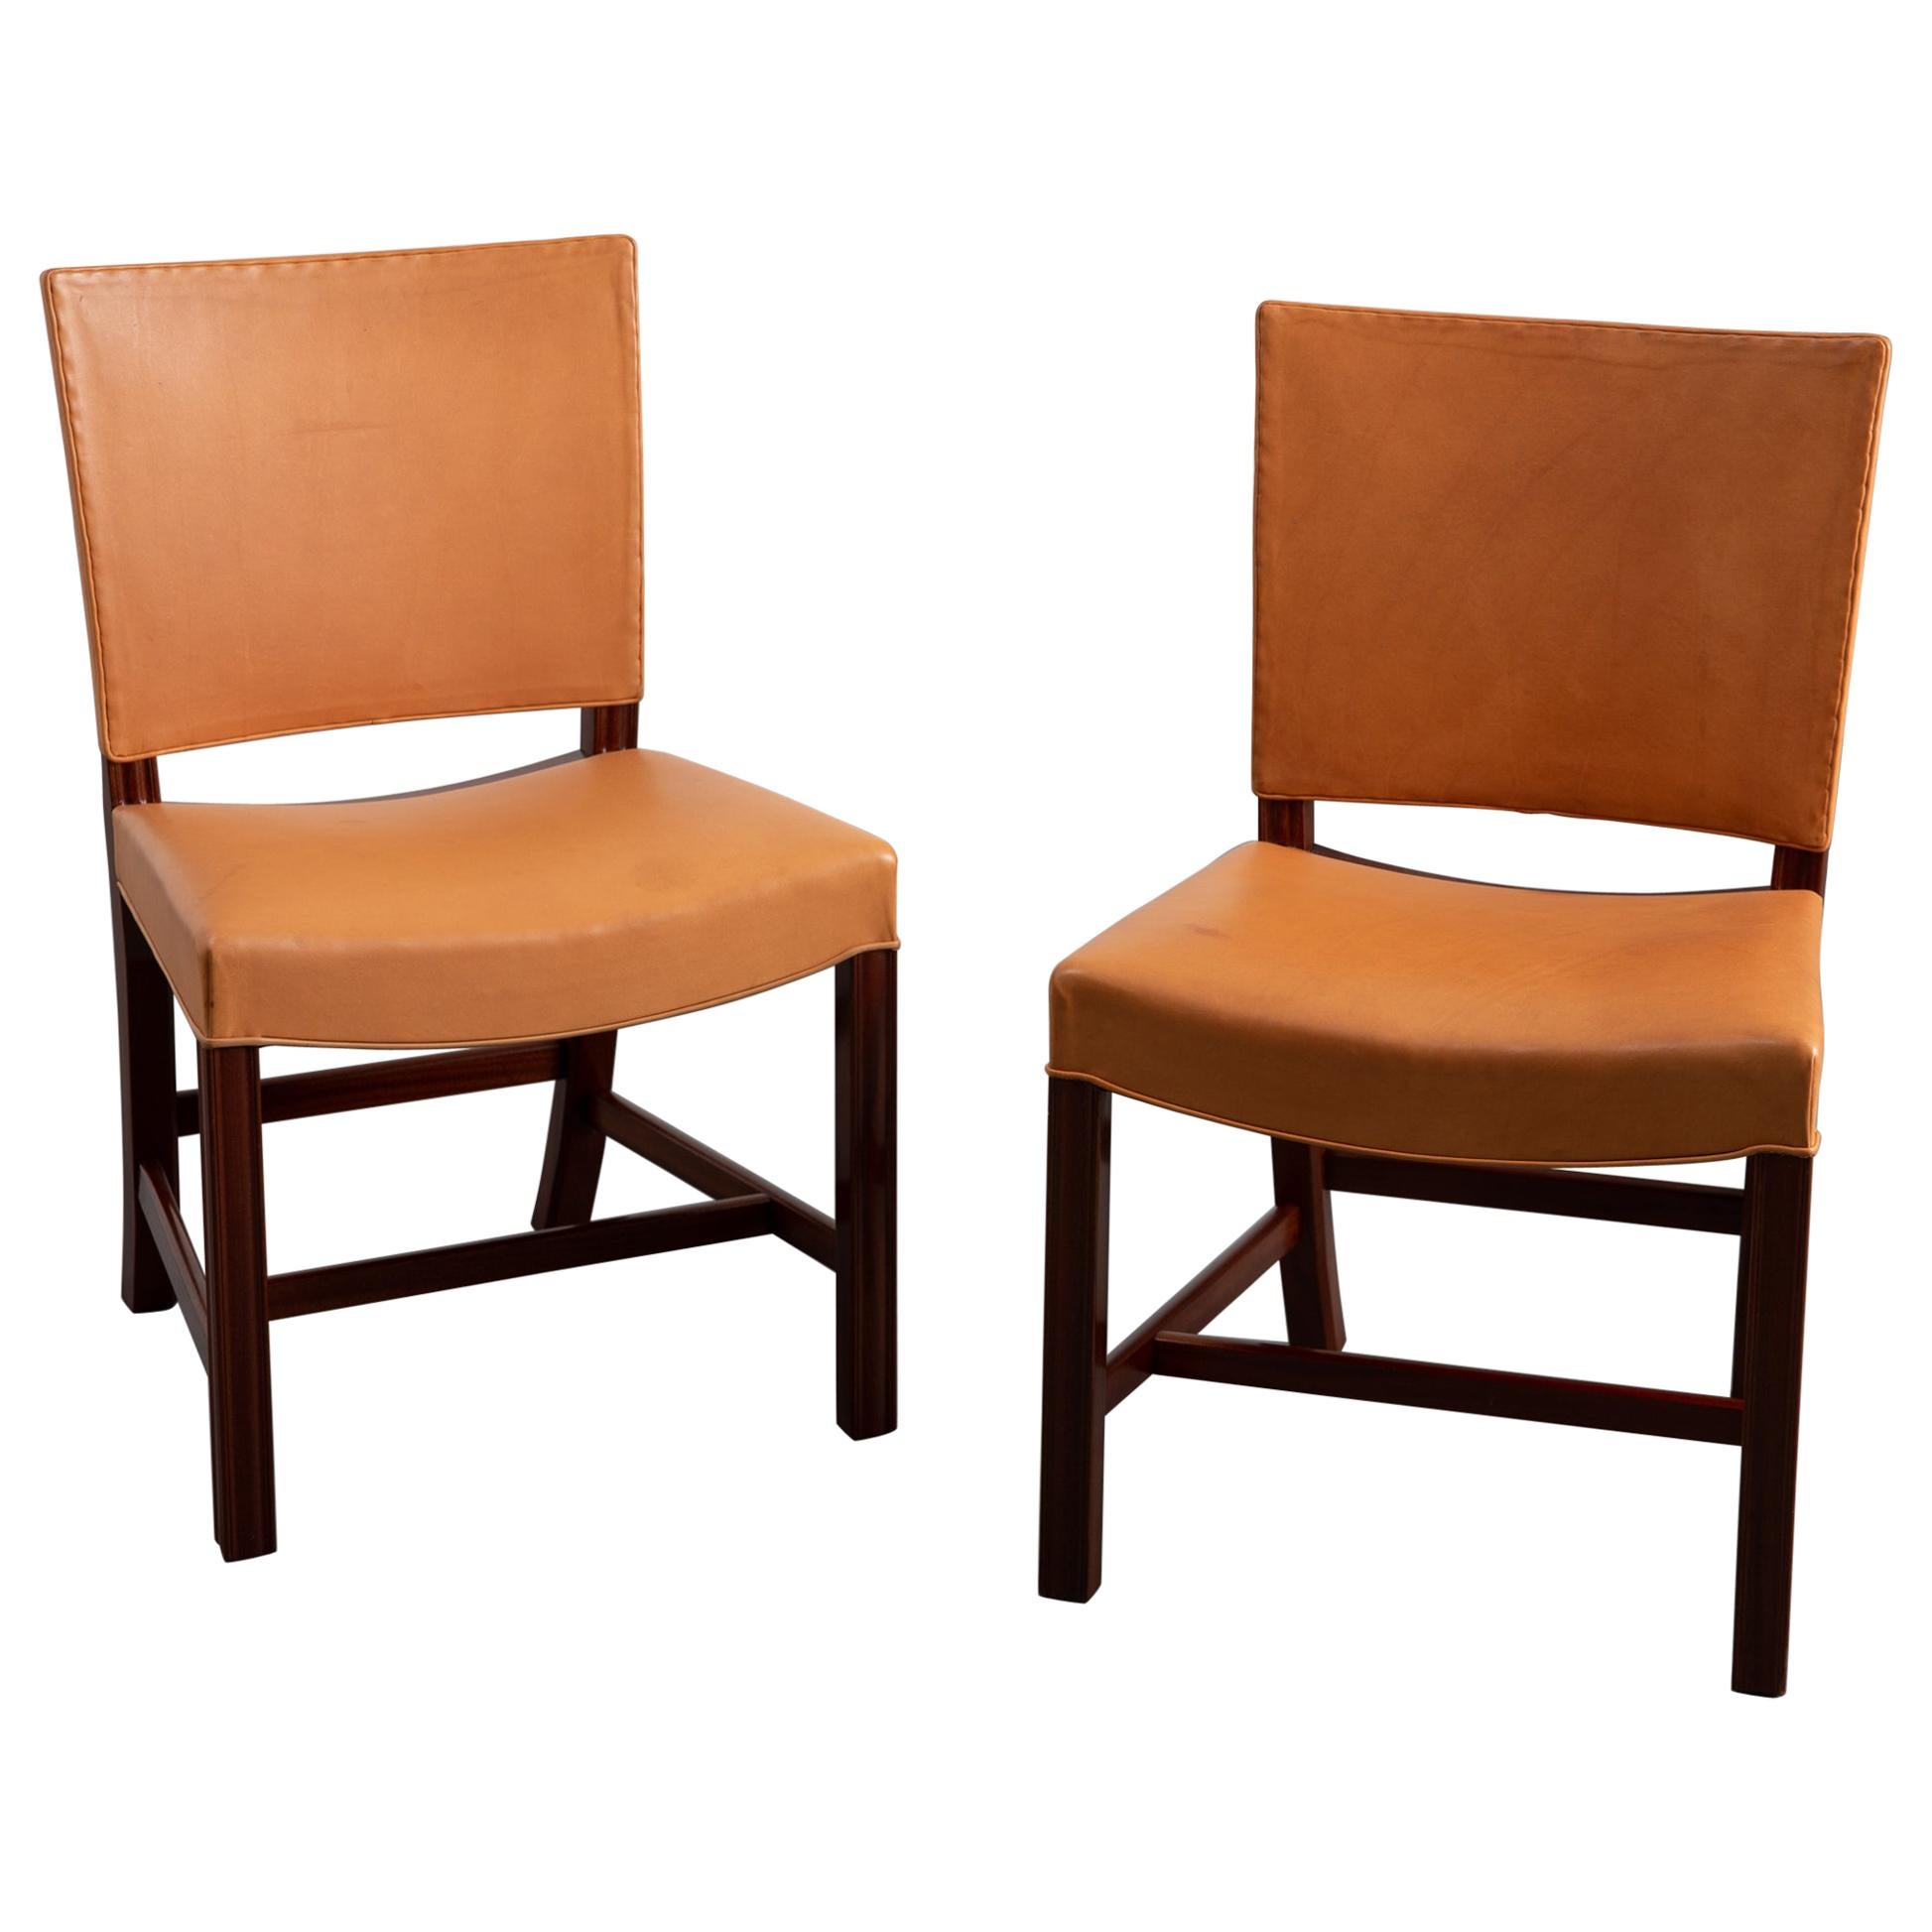 Pair of 1920s Kaare Klint Sidechairs